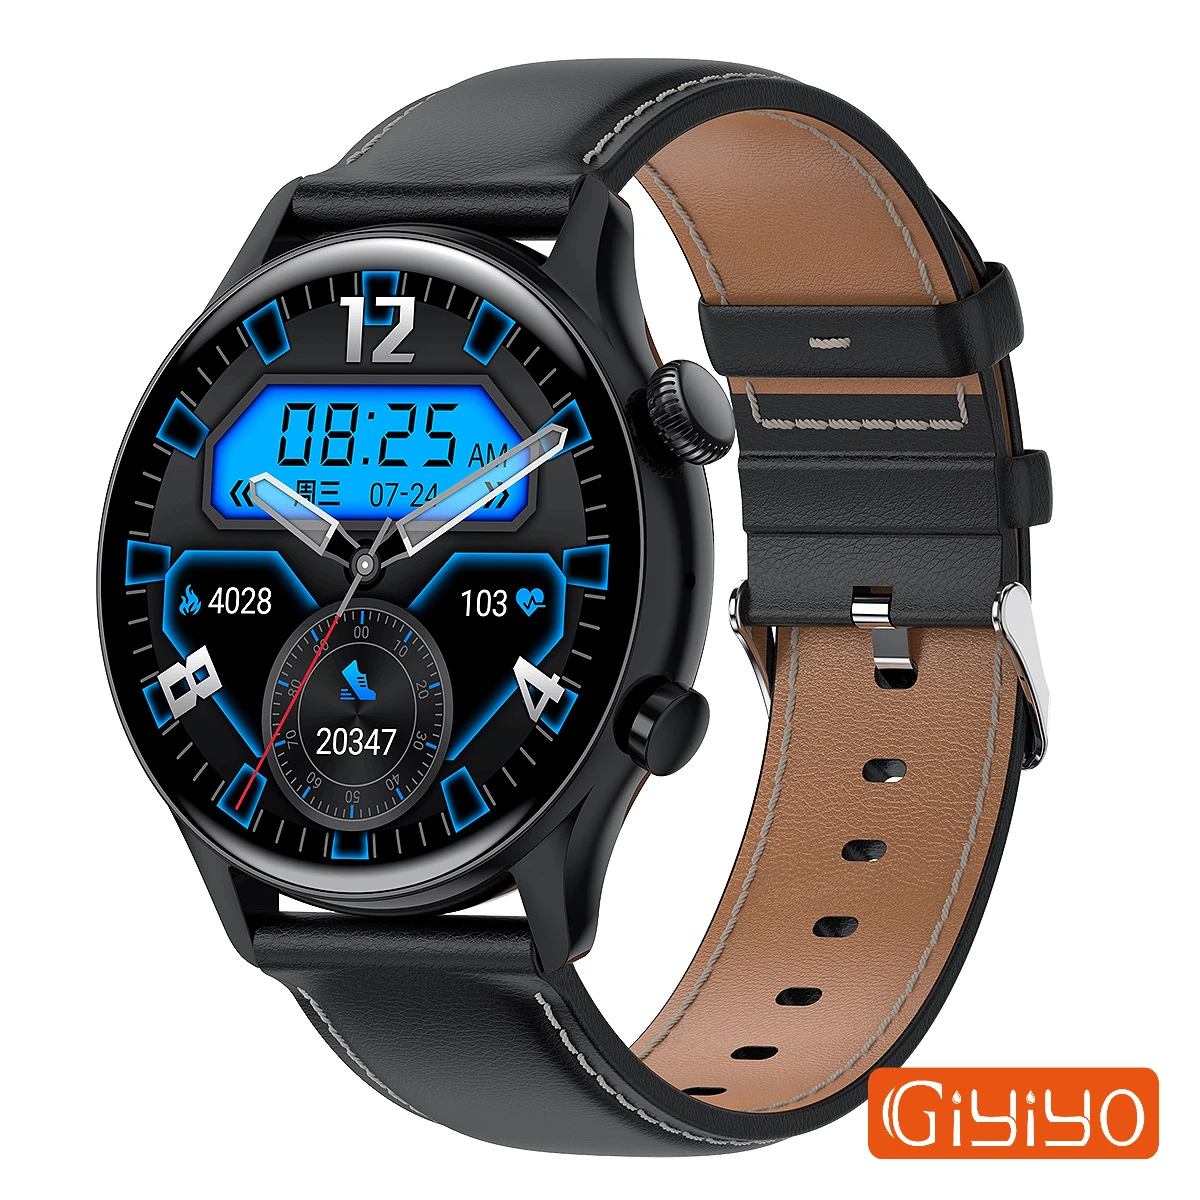 

Смарт-часы мужские водонепроницаемые с поддержкой NFC Pay и Bluetooth